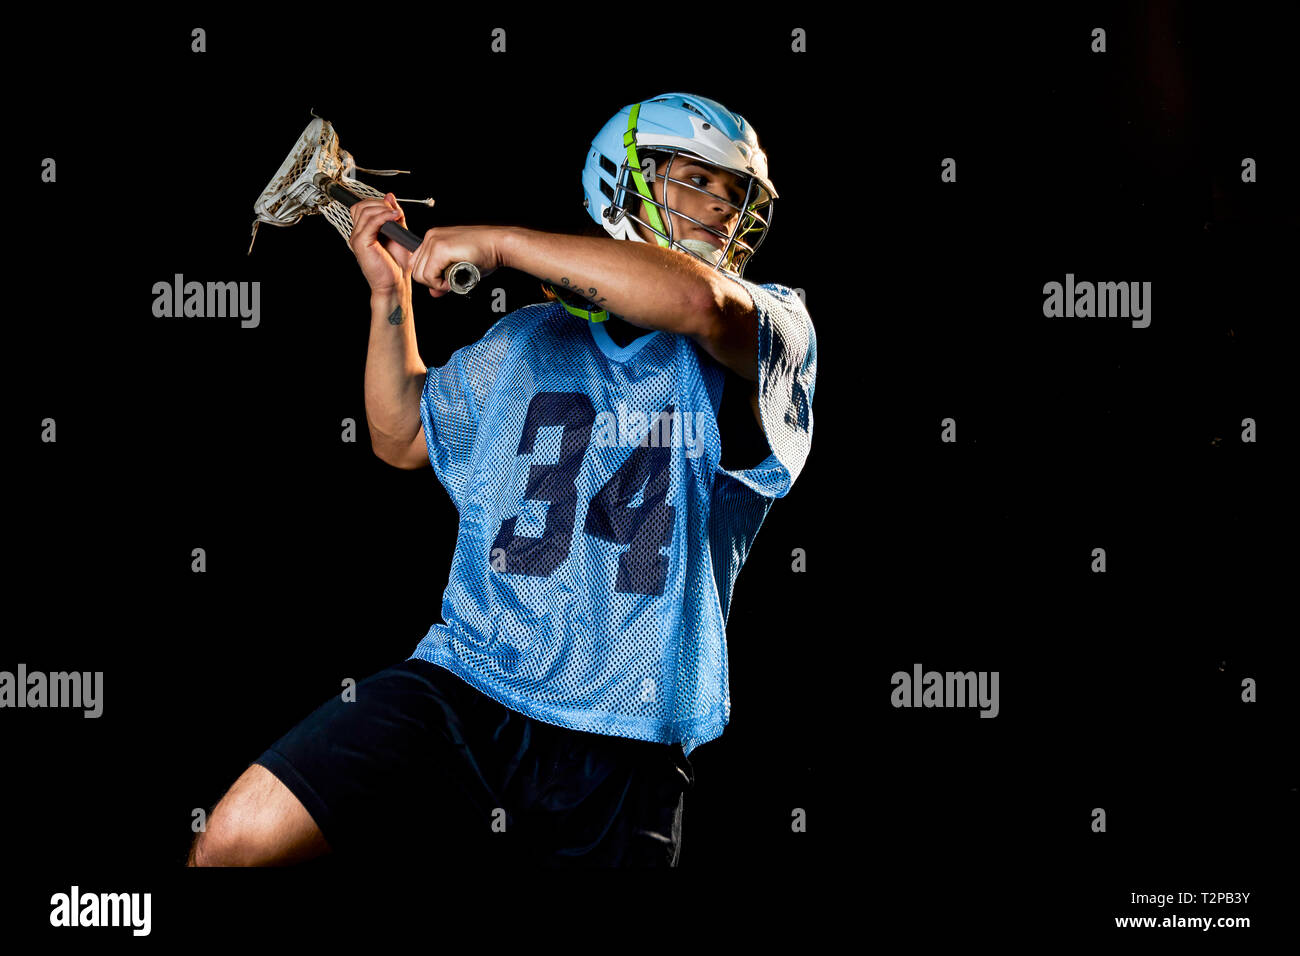 Giovane maschio lacrosse player in azione con lacrosse stick, su sfondo nero Foto Stock